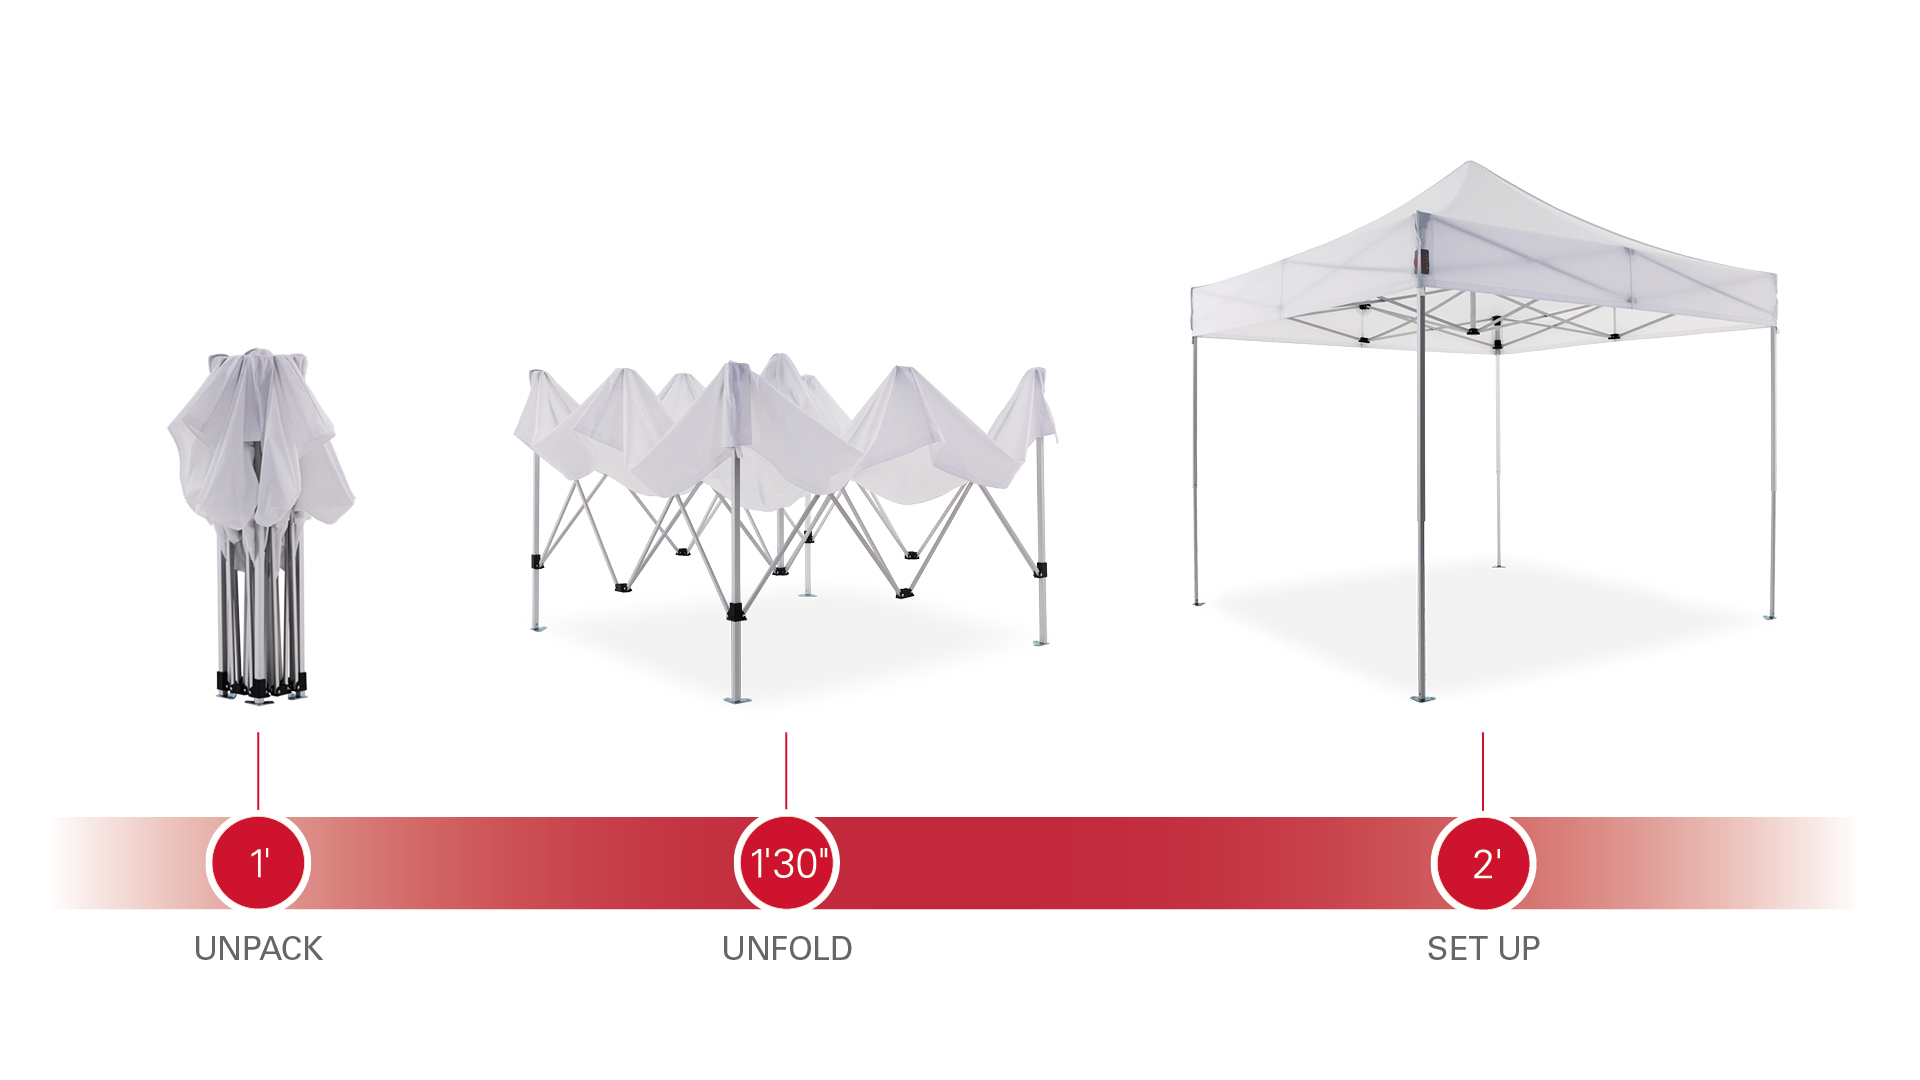 Aufbau eines 3x3m Faltpavillons: auspacken, auseinanderziehen, aufstellen